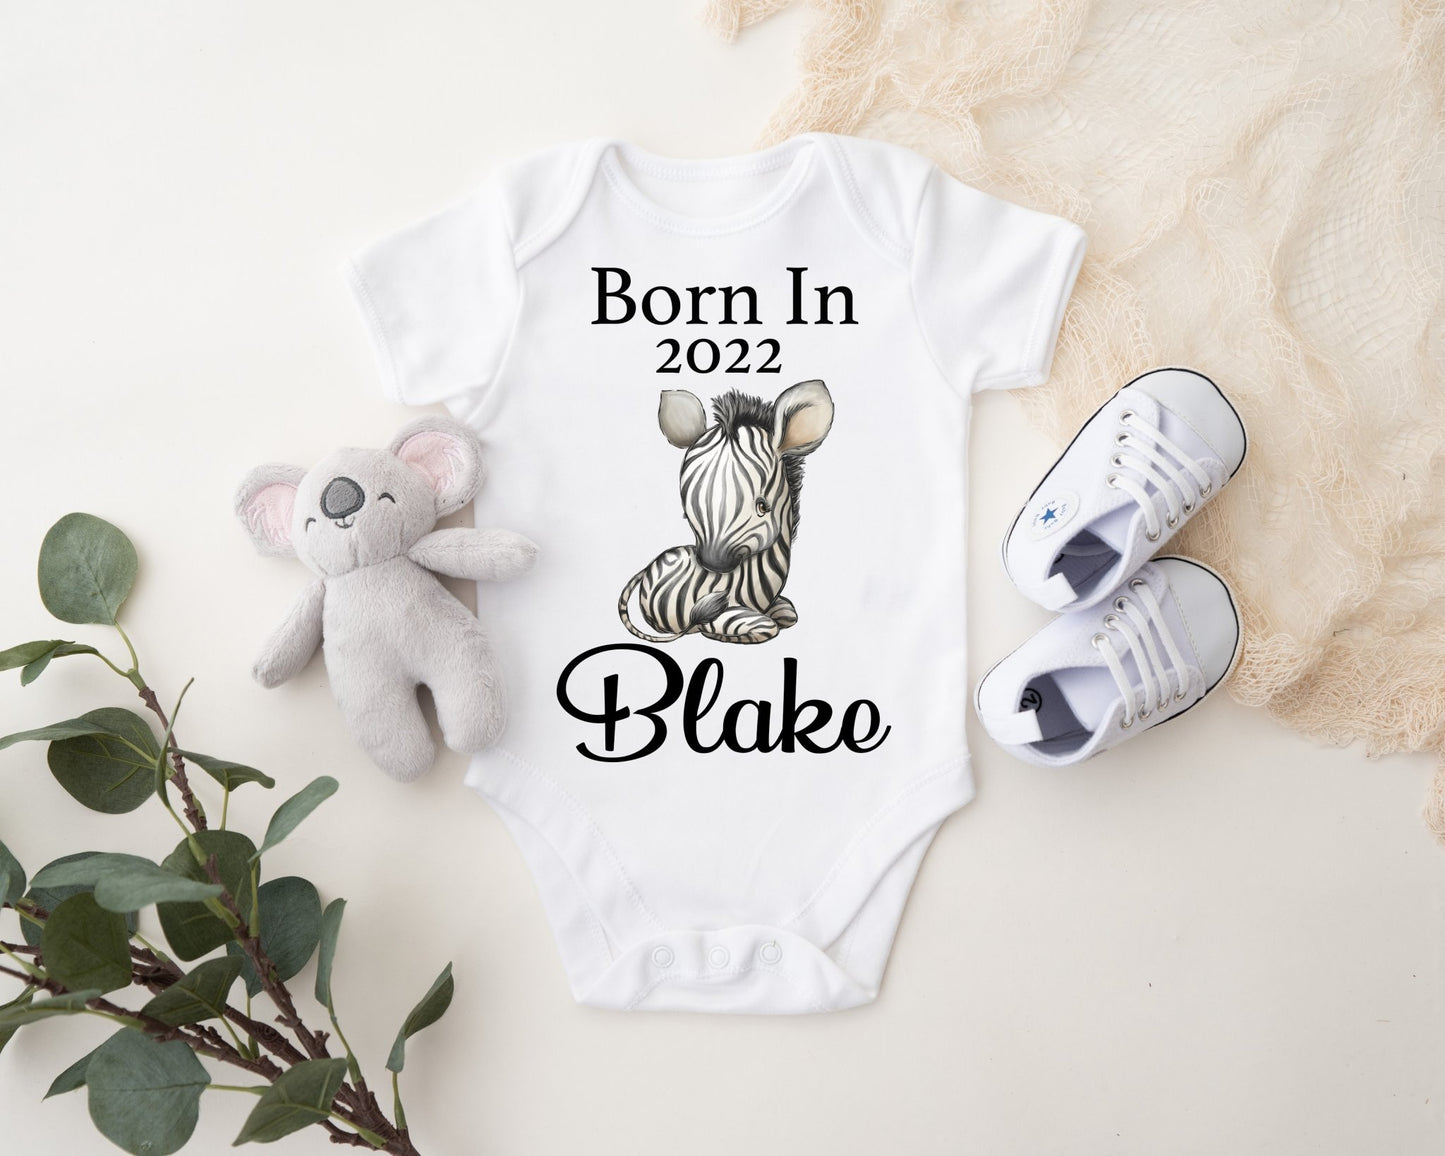 Born In 2022 Vest - Zebra Boy Print